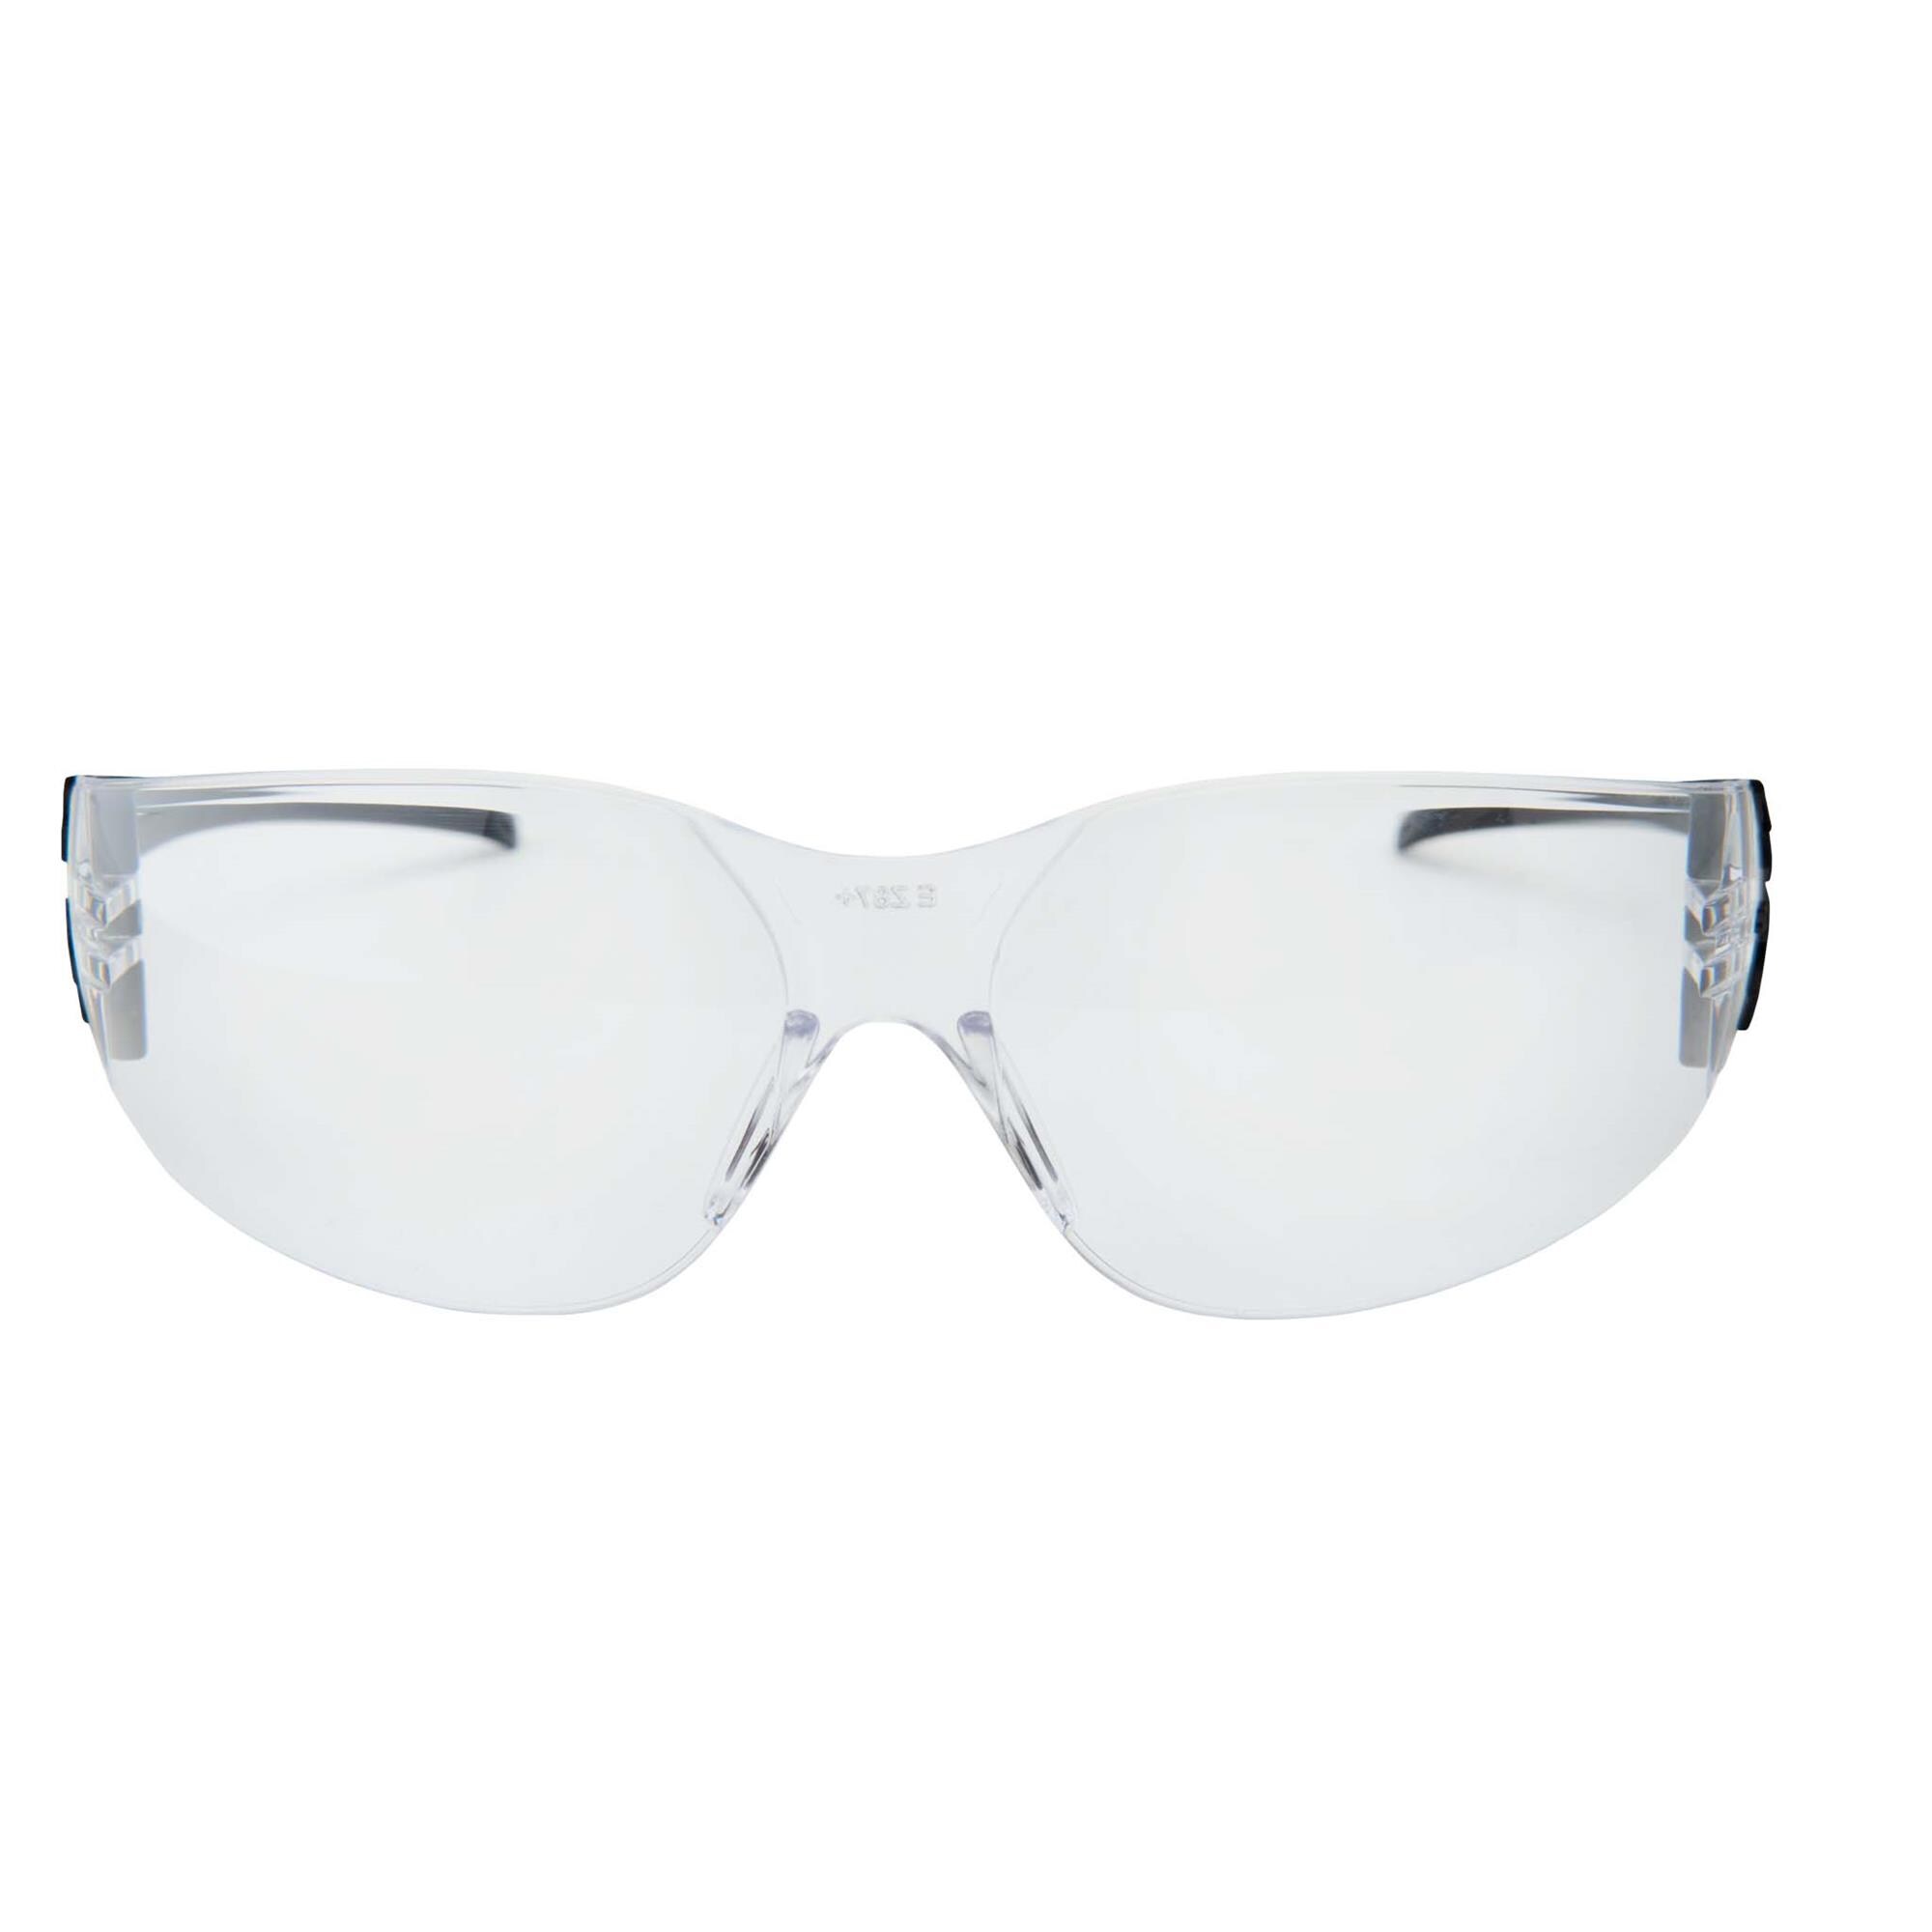 Edge Eyewear Viso Clear Vapor Shield Lenses 200-Pack Nylon Safety Glasses